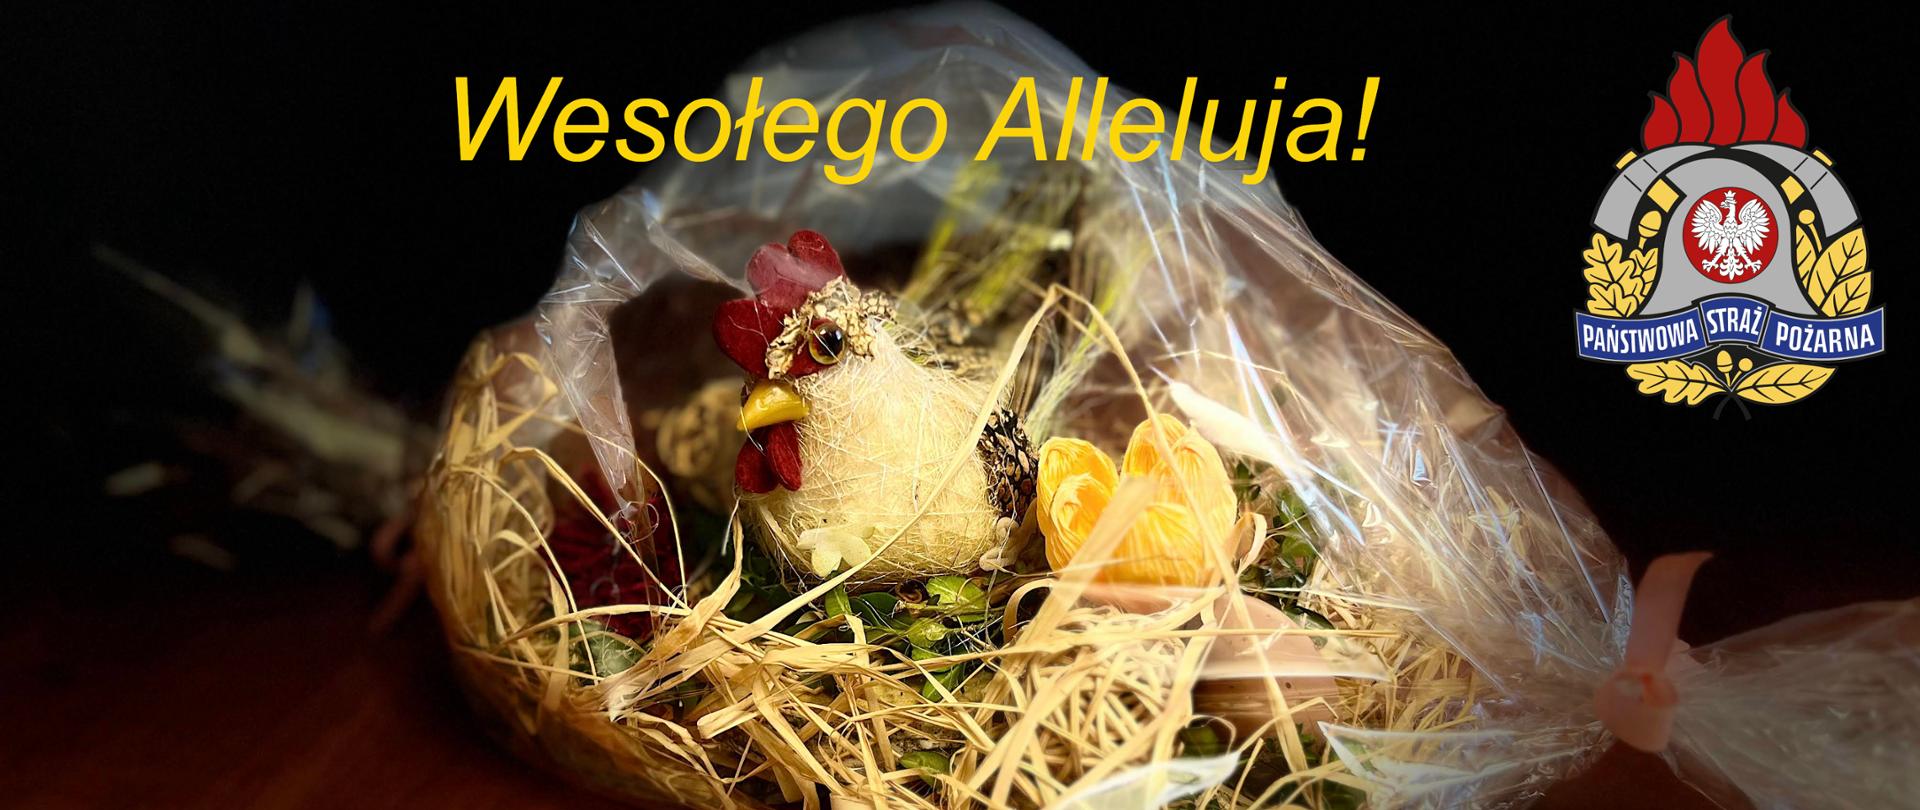 Zdjęcie ozdobnego świątecznego gniazda z kurą, pisanką, wiosennymi kwiatami, zapakowanego w folii leżącego na stole. Nad ozdobą żółty napis Wesołego Alleluja. W górnym prawym rogu logotyp Państwowej Straży Pożarnej .